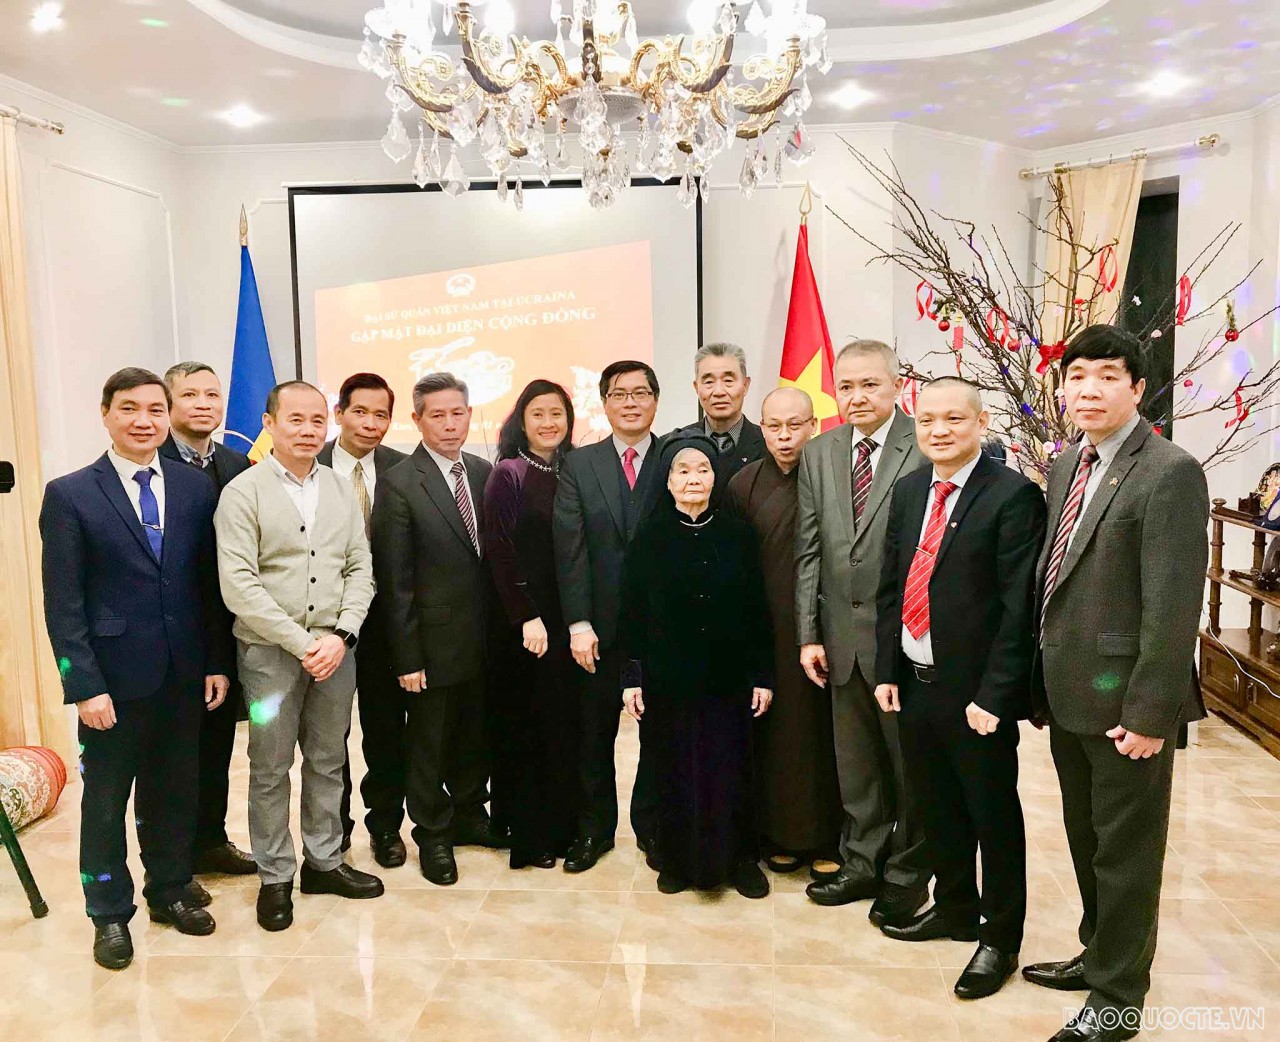 Đại sứ quán Việt Nam tại Ukraine tổ chức chương trình Xuân Quê hương 2022